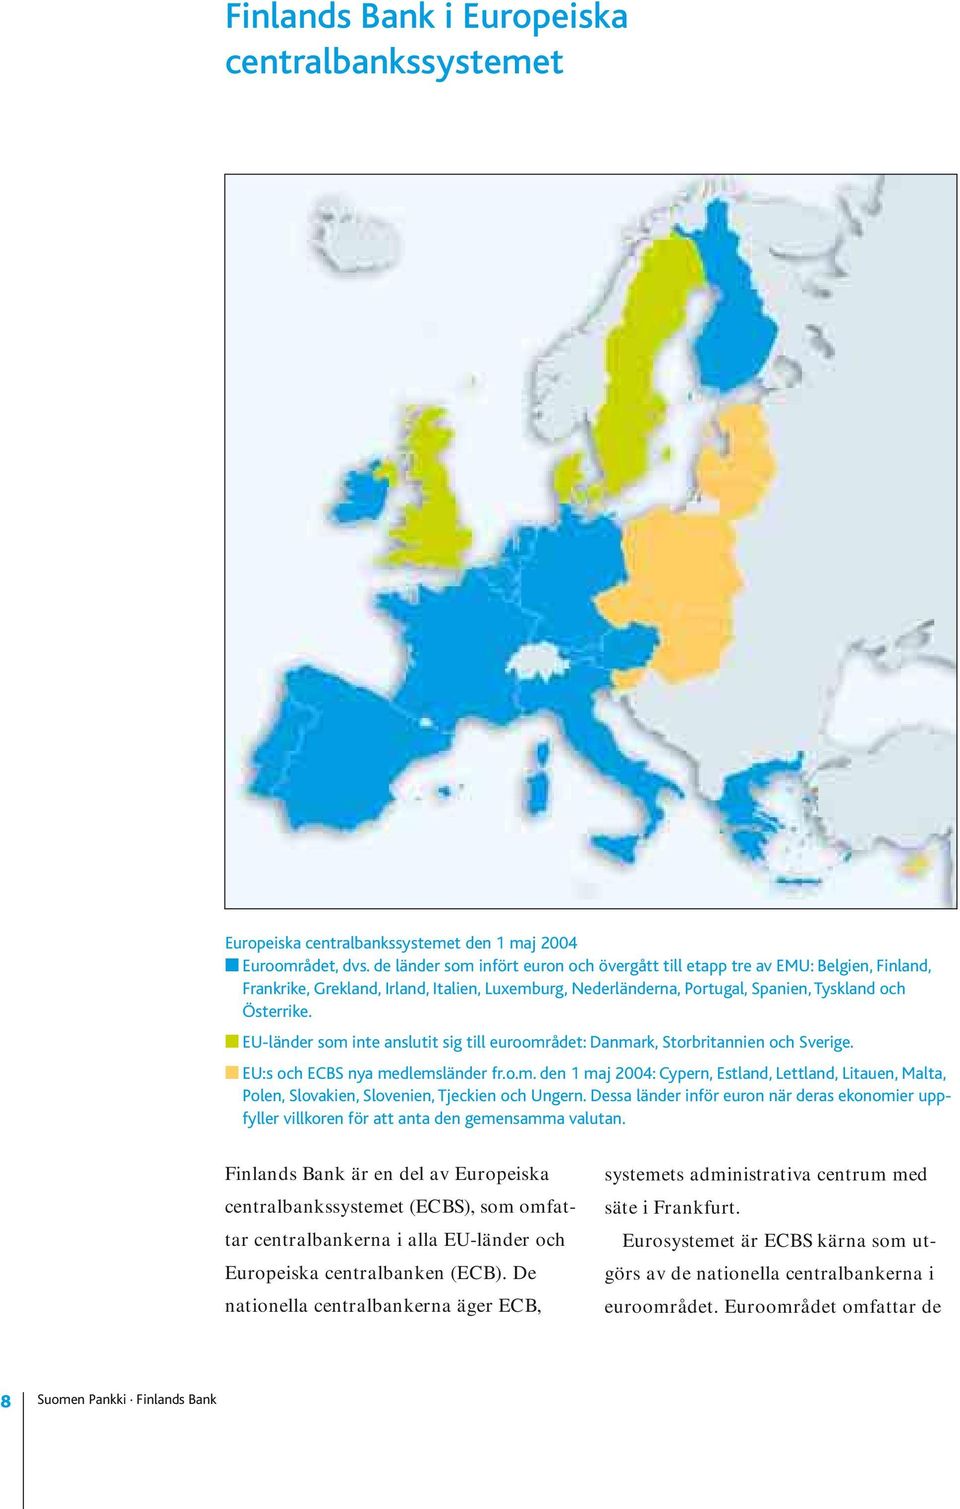 EU-länder som inte anslutit sig till euroområdet: Danmark, Storbritannien och Sverige. EU:s och ECBS nya medlemsländer fr.o.m. den 1 maj 2004: Cypern, Estland, Lettland, Litauen, Malta, Polen, Slovakien, Slovenien, Tjeckien och Ungern.